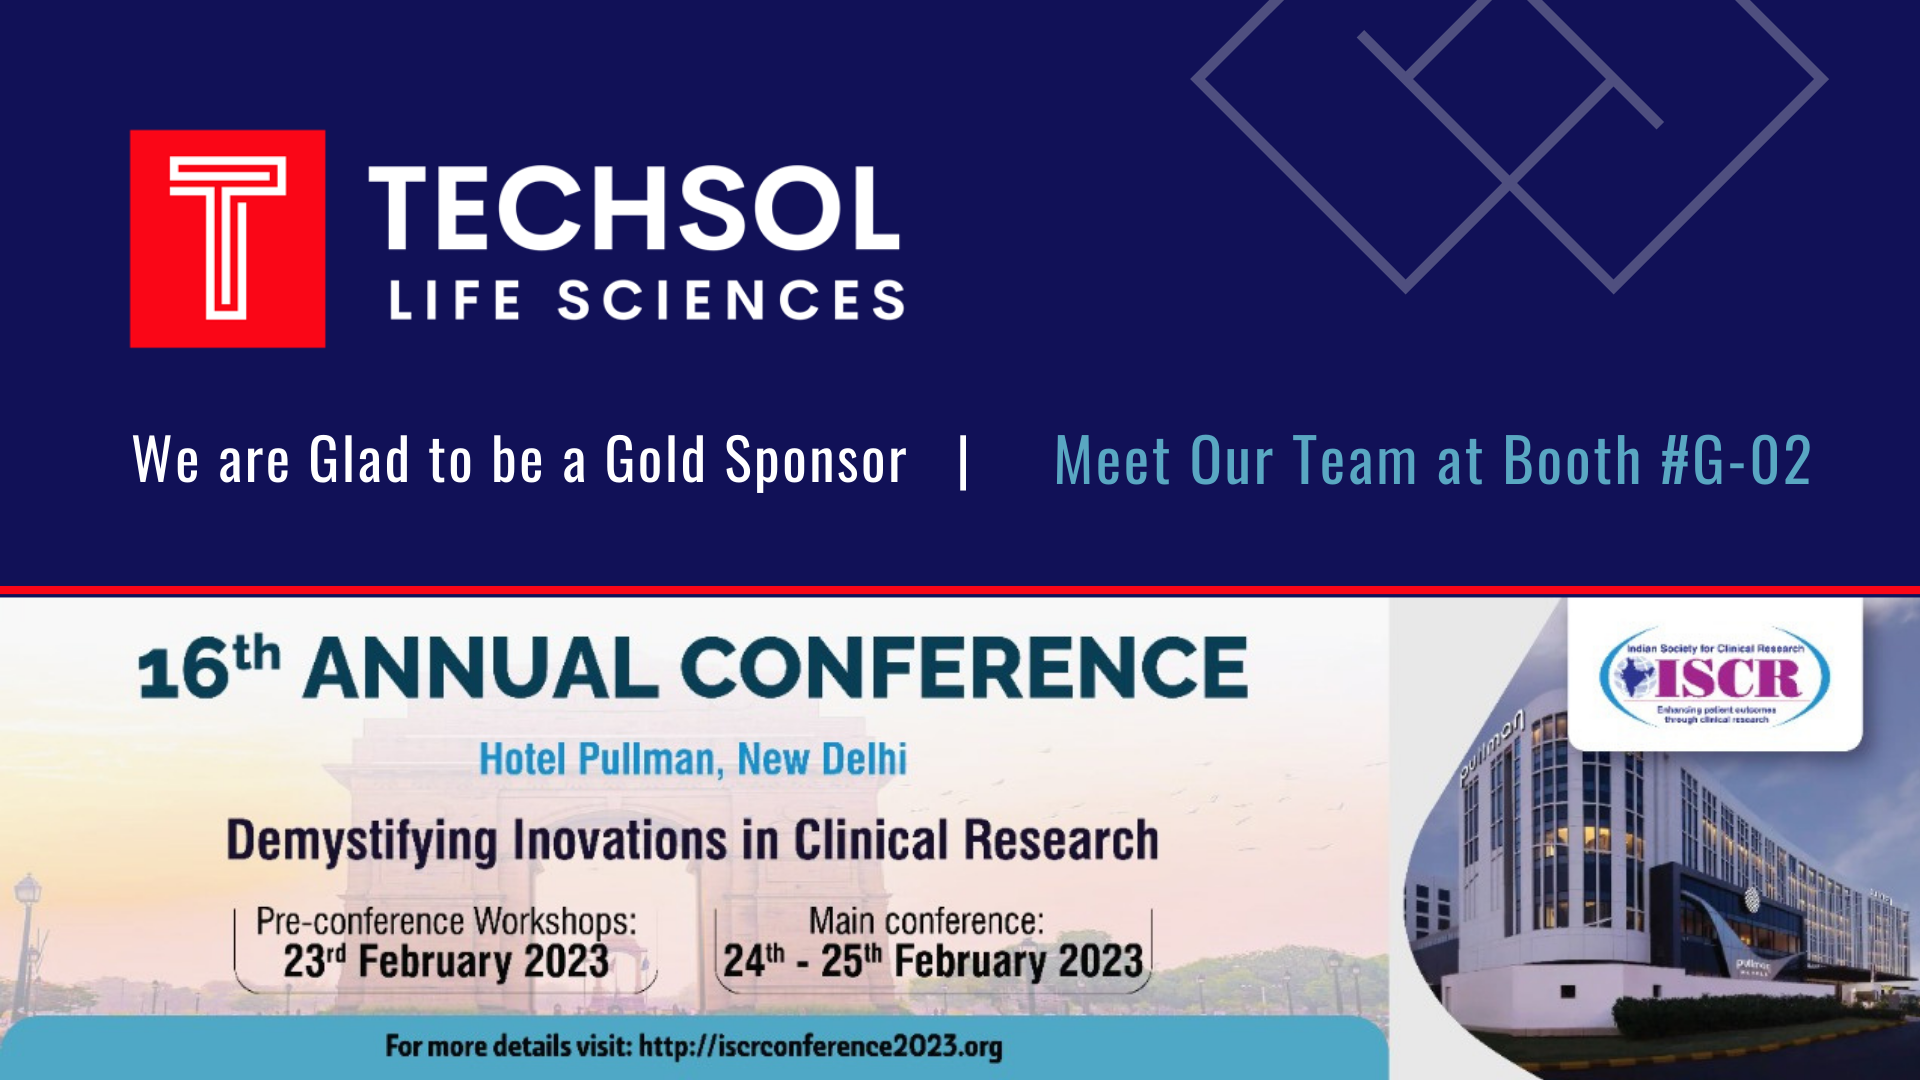 ISCR 2023 | Techsol Life Sciences